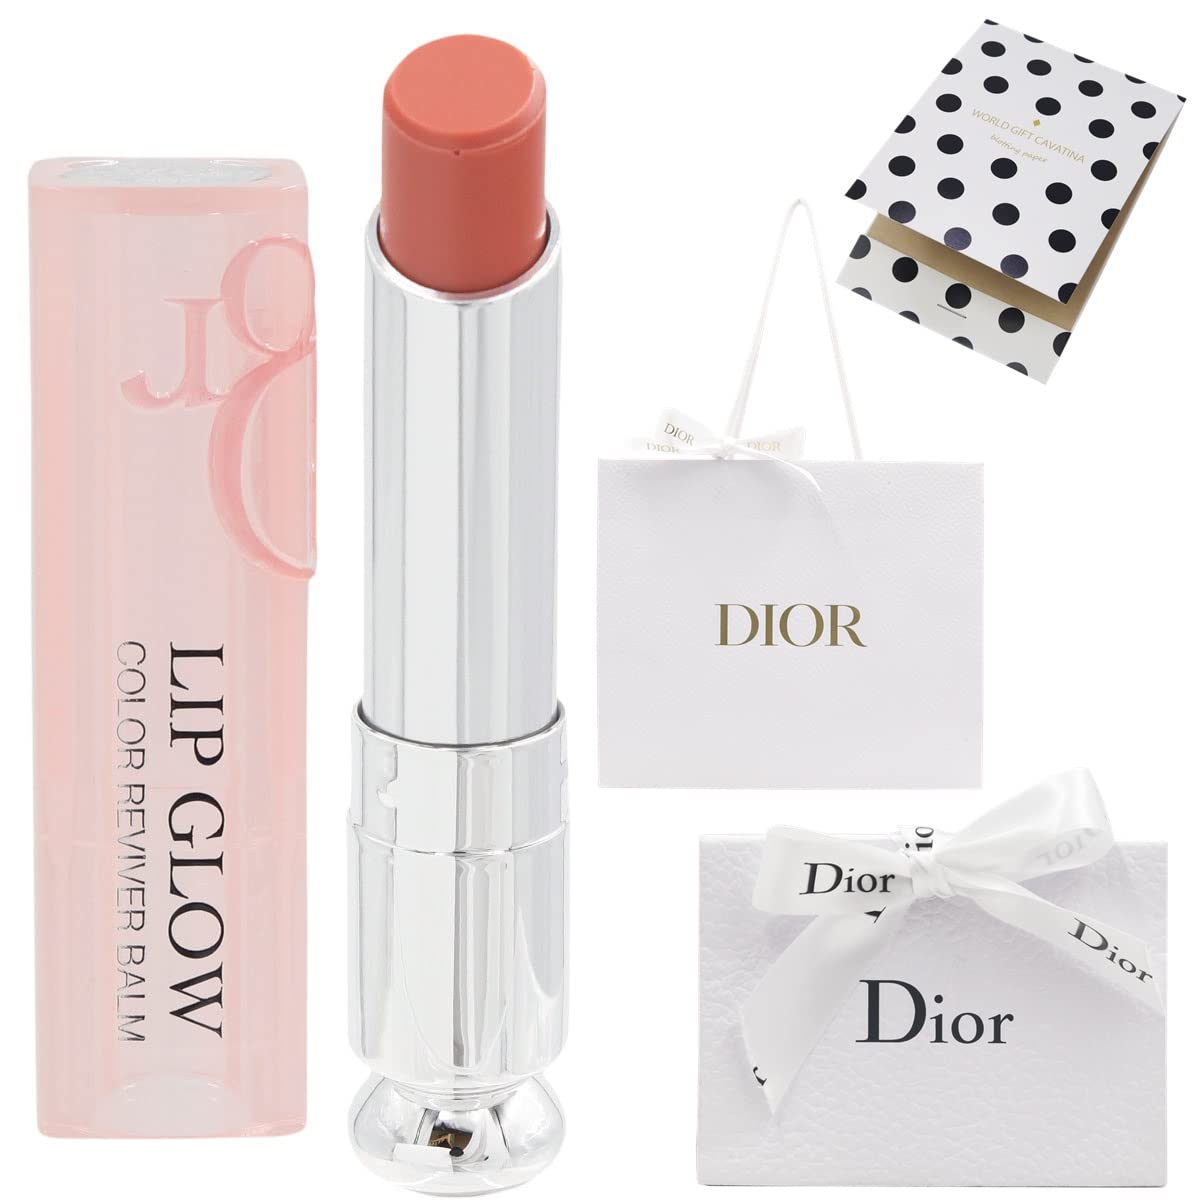 Dior Addict Lip Maximizer Cho Đôi Môi Thêm Quyến Rũ